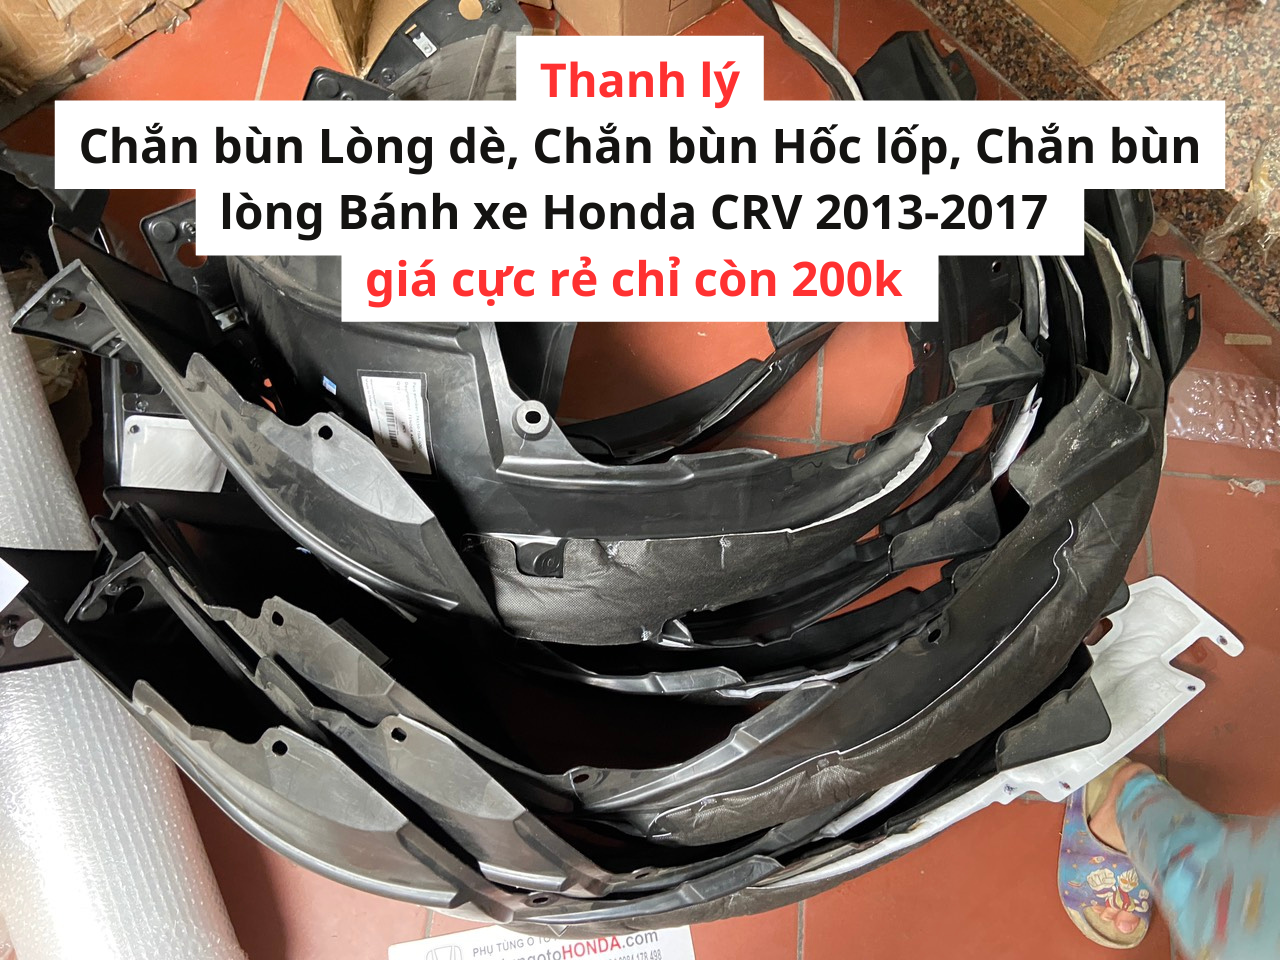 Chắn bùn Lòng dè, Chắn bùn Hốc lốp, Chắn bùn lòng Bánh xe Honda CRV 2013-2017 Hàng Thanh lý